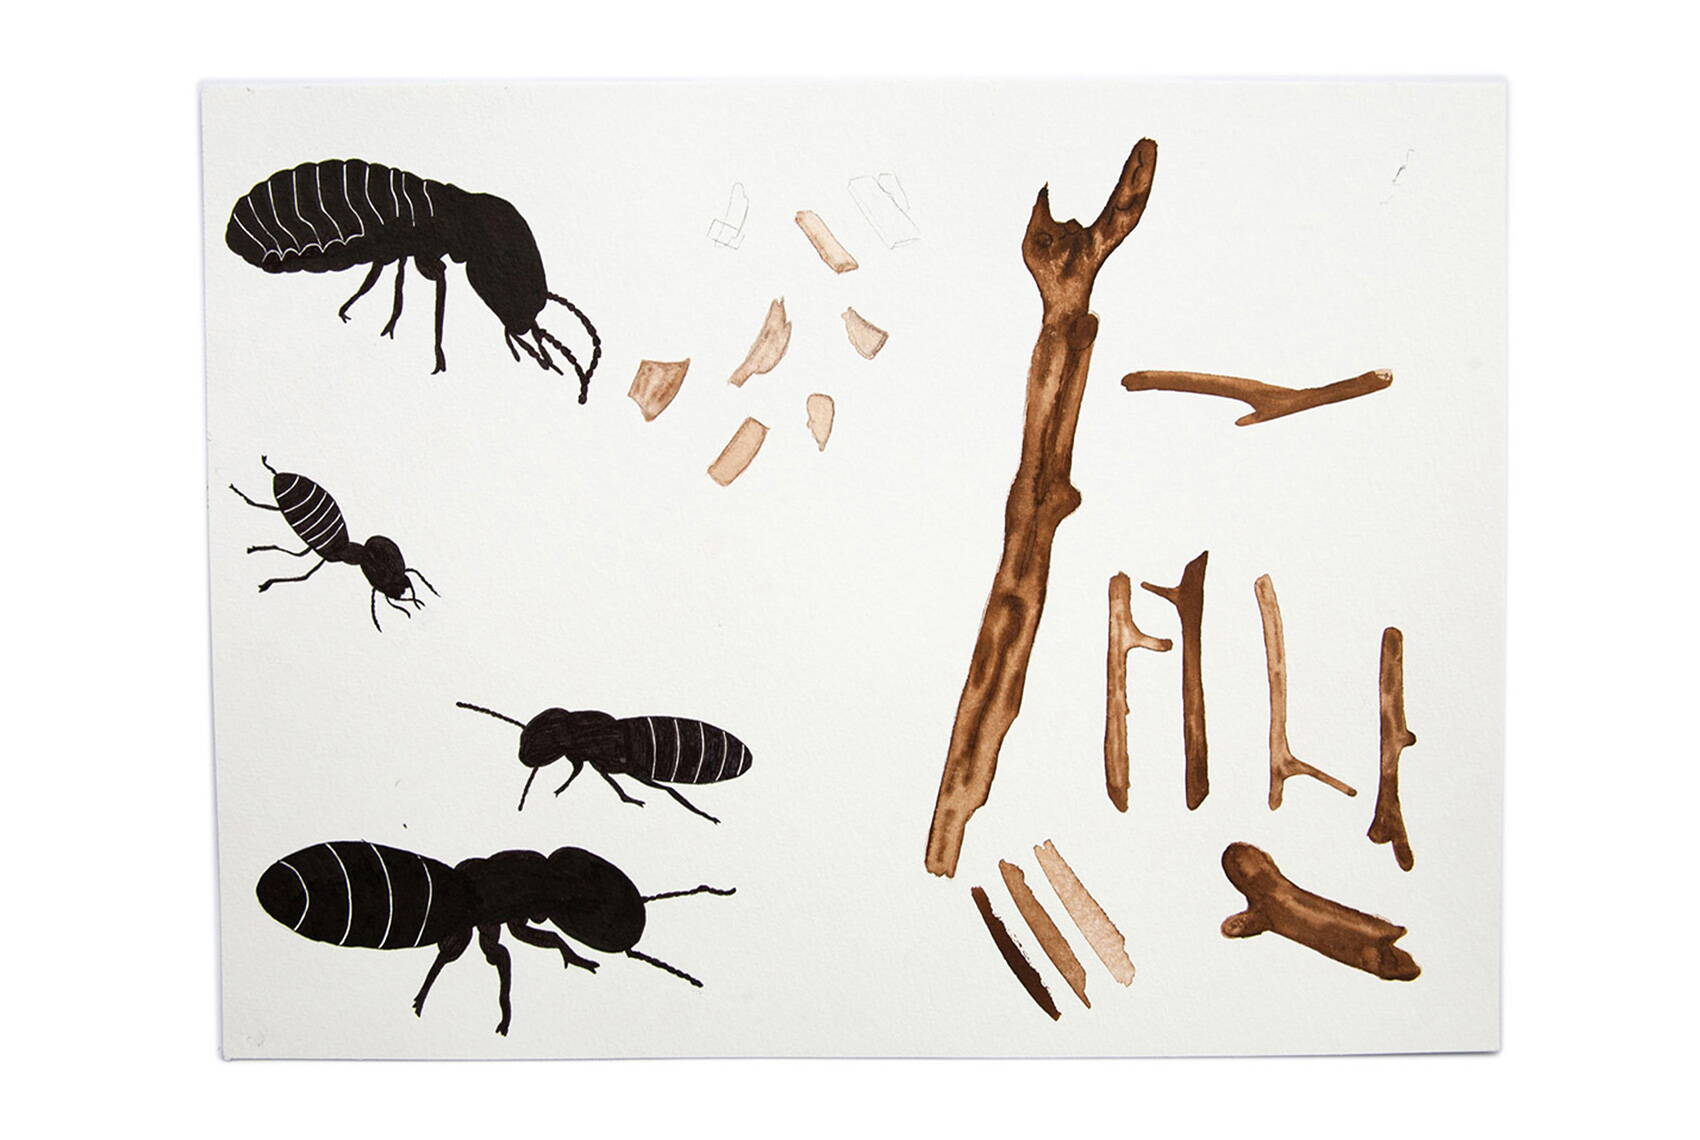 Buur, Näll, Ass – der Insektenjass. Jasskartendesign Illustration Entwürfe mit Tusche von deiner Grafik Agentur in Winterthur.